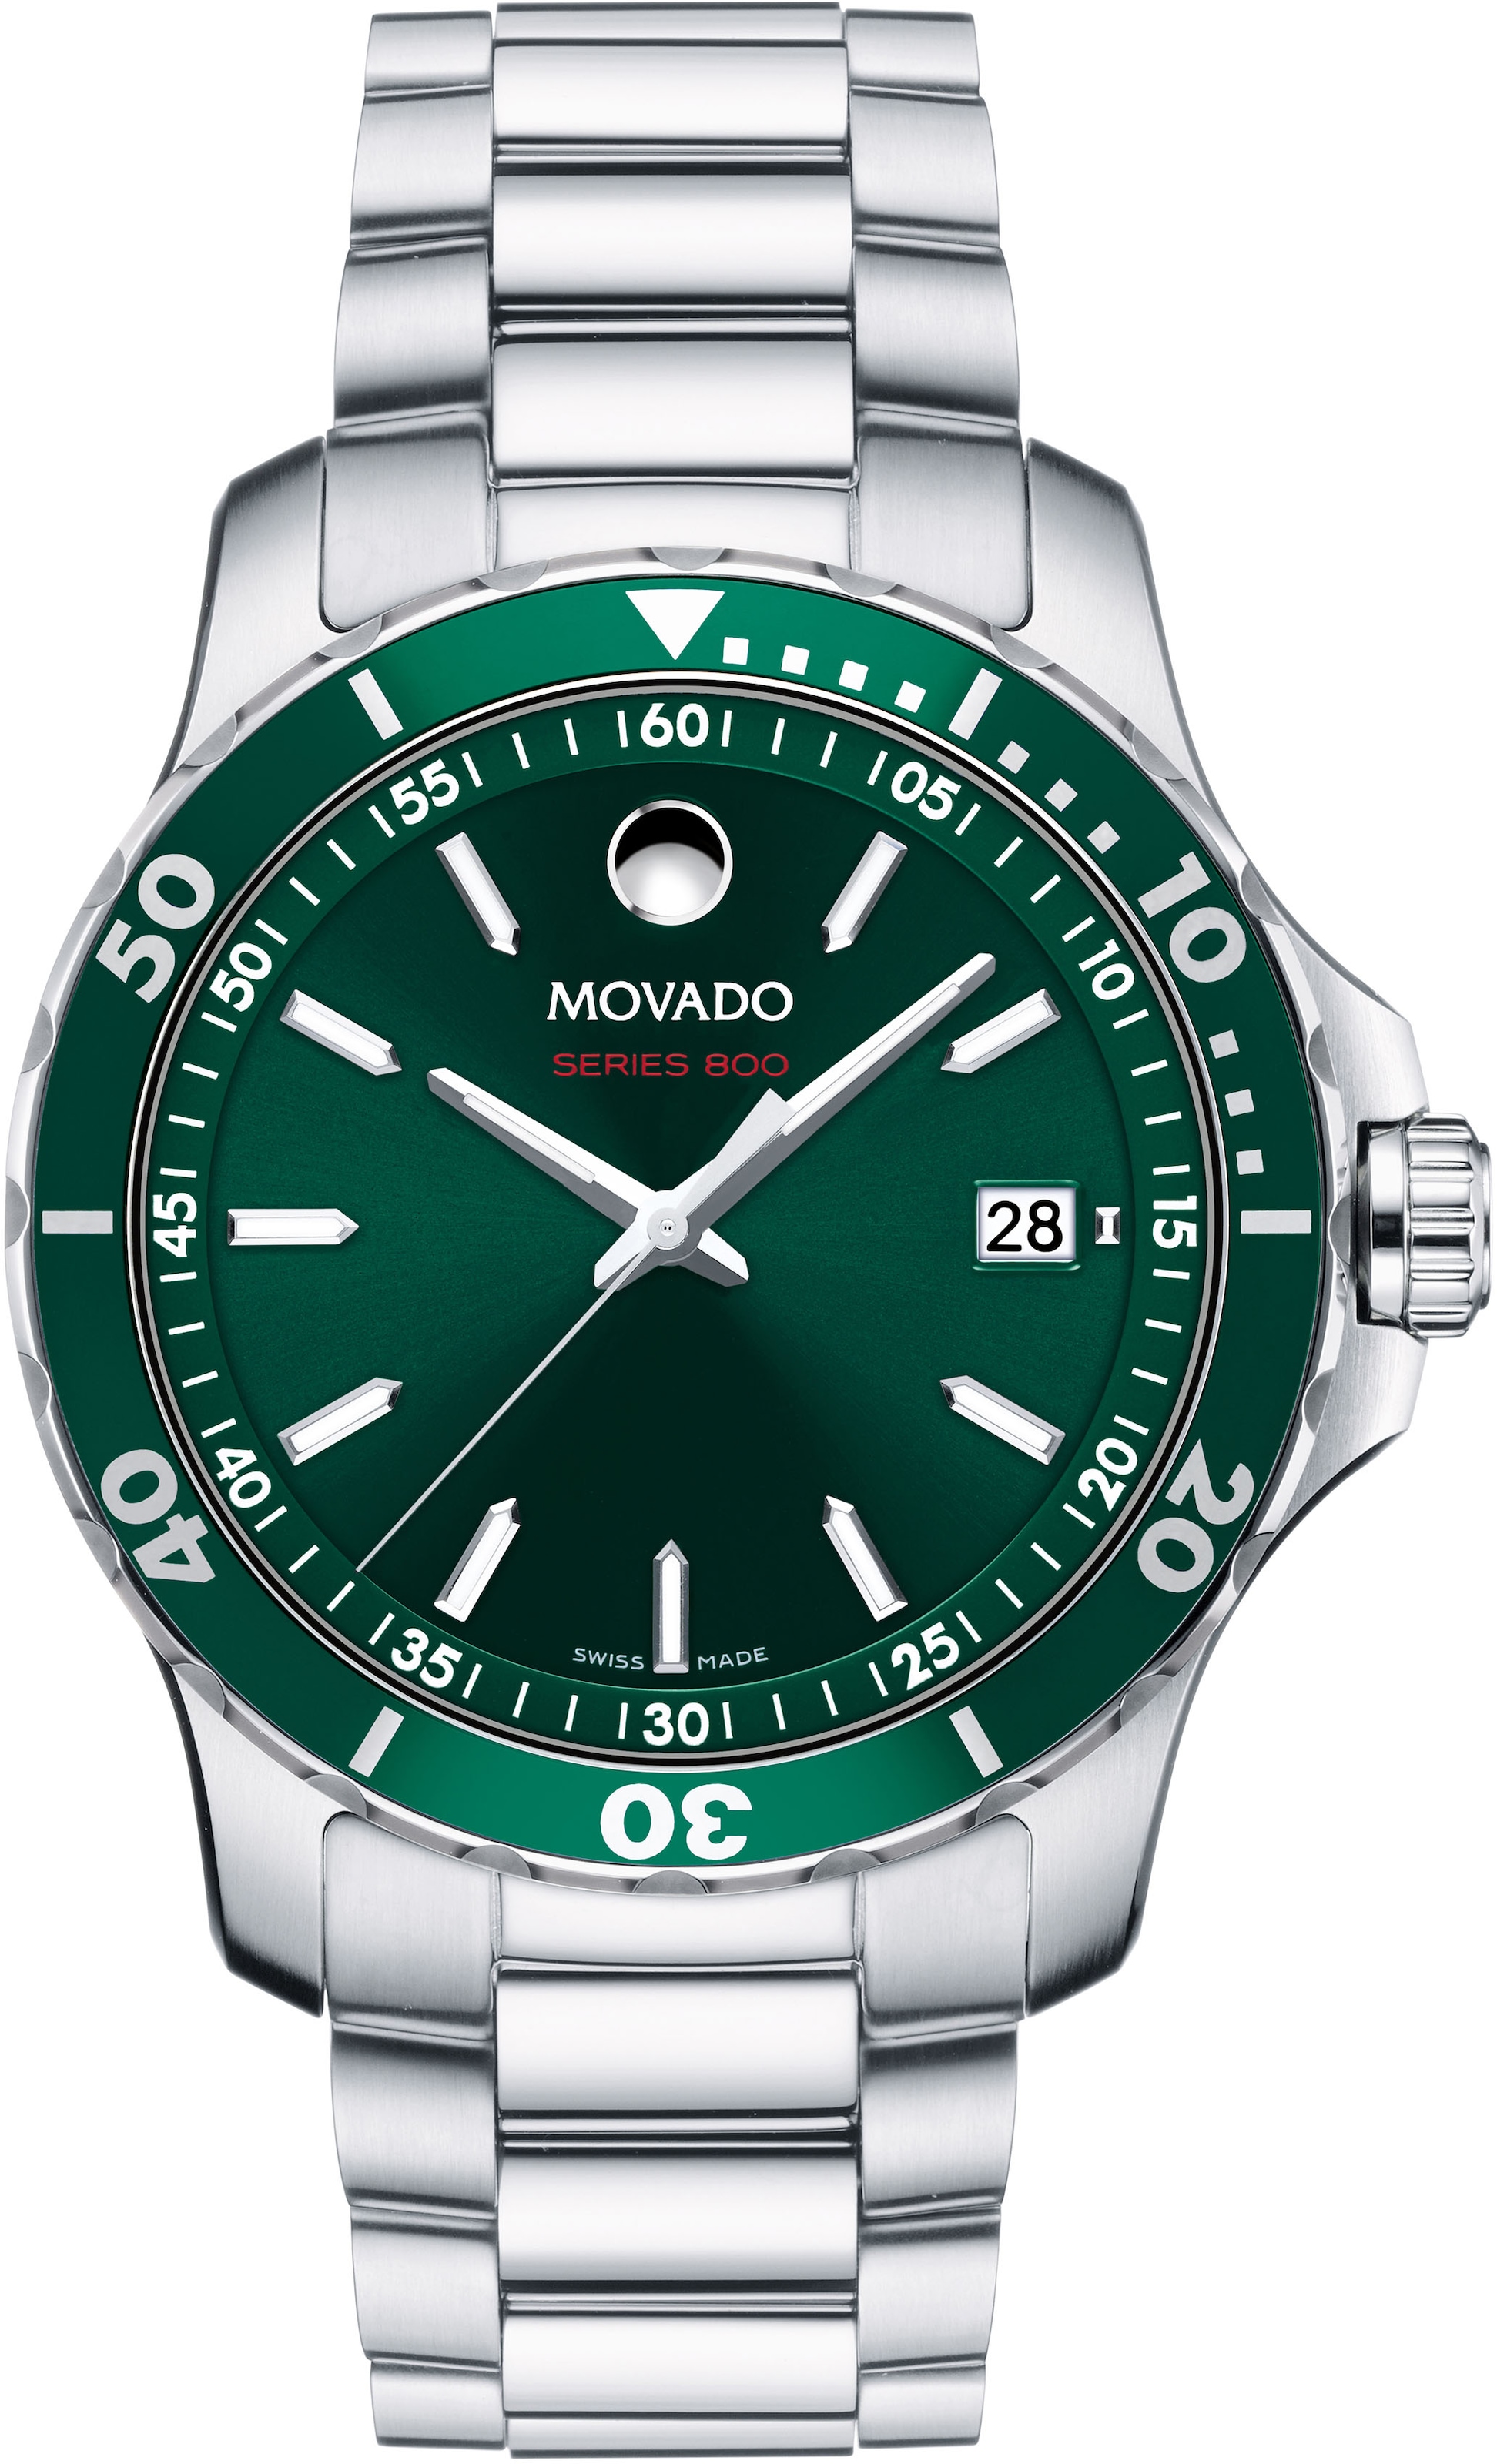 MOVADO Schweizer Uhr »Series 800, auf 2600136« kaufen Rechnung